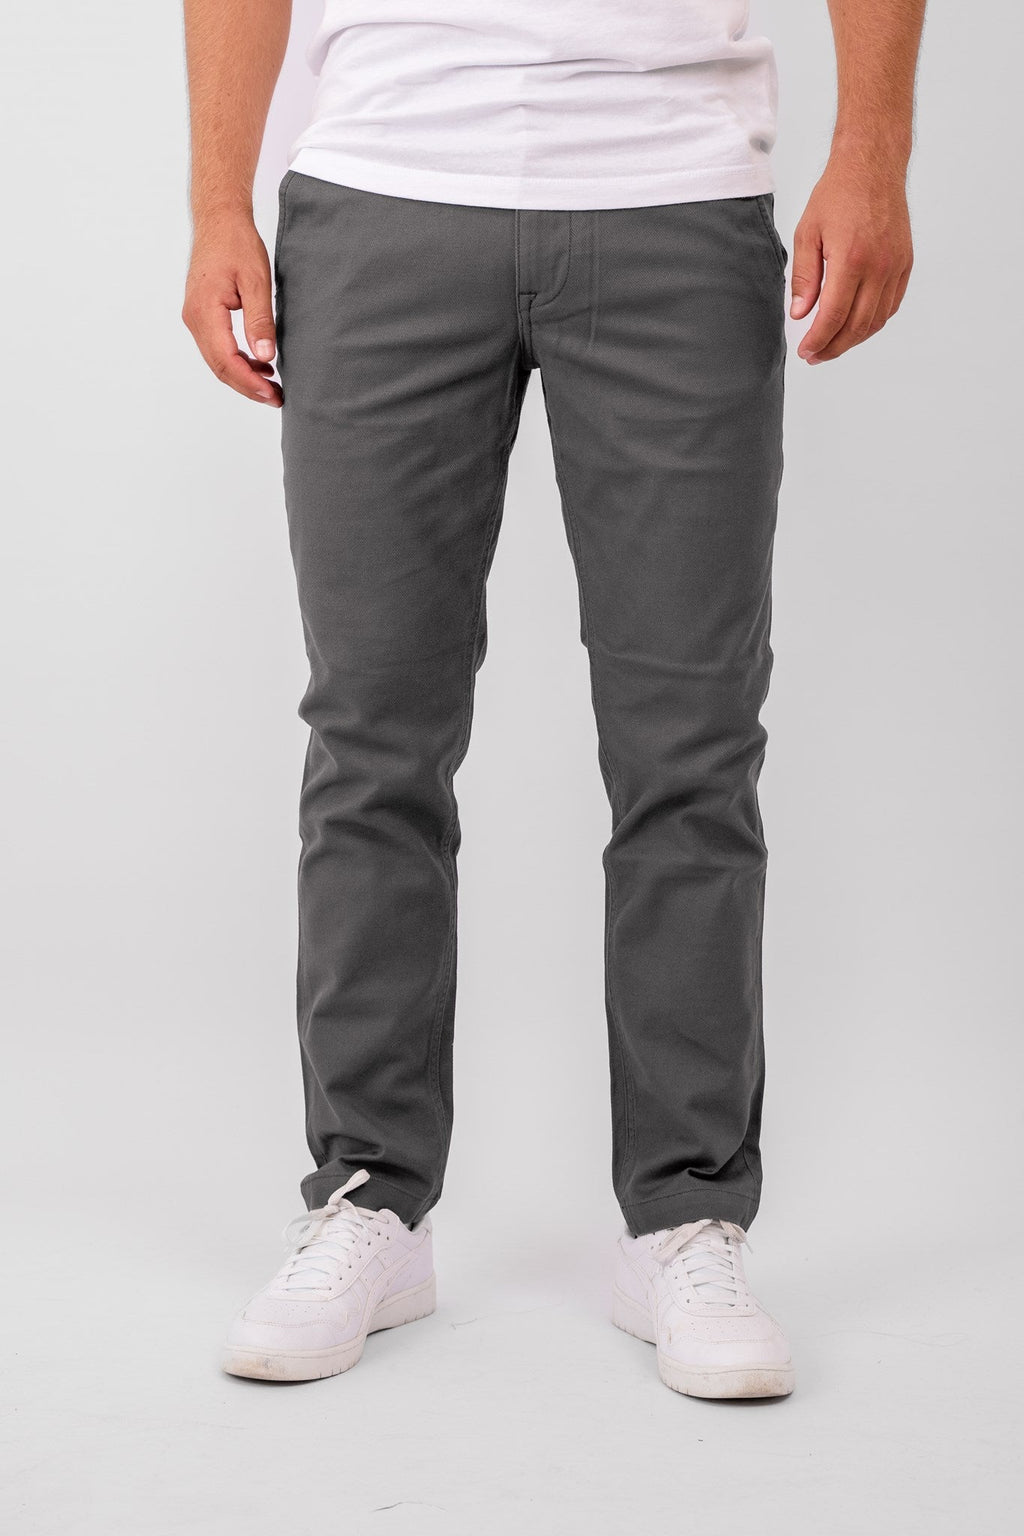 原始性能结构裤（常规） - 深灰色